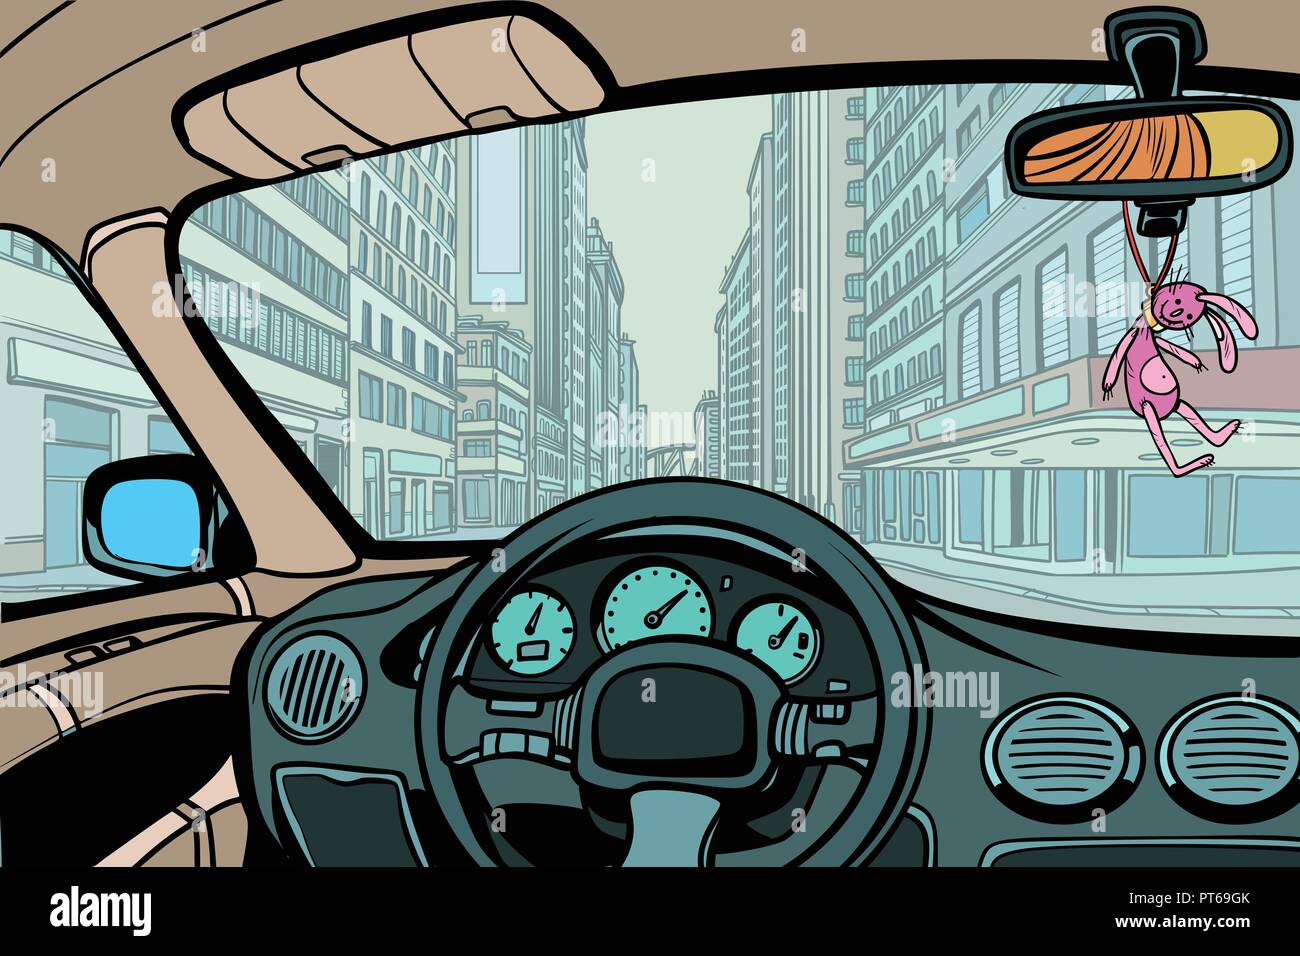 Auto in der Stadt, Ansicht von Innen. Comic cartoon Pop Art retro Vektor illustration Zeichnung Stock Vektor